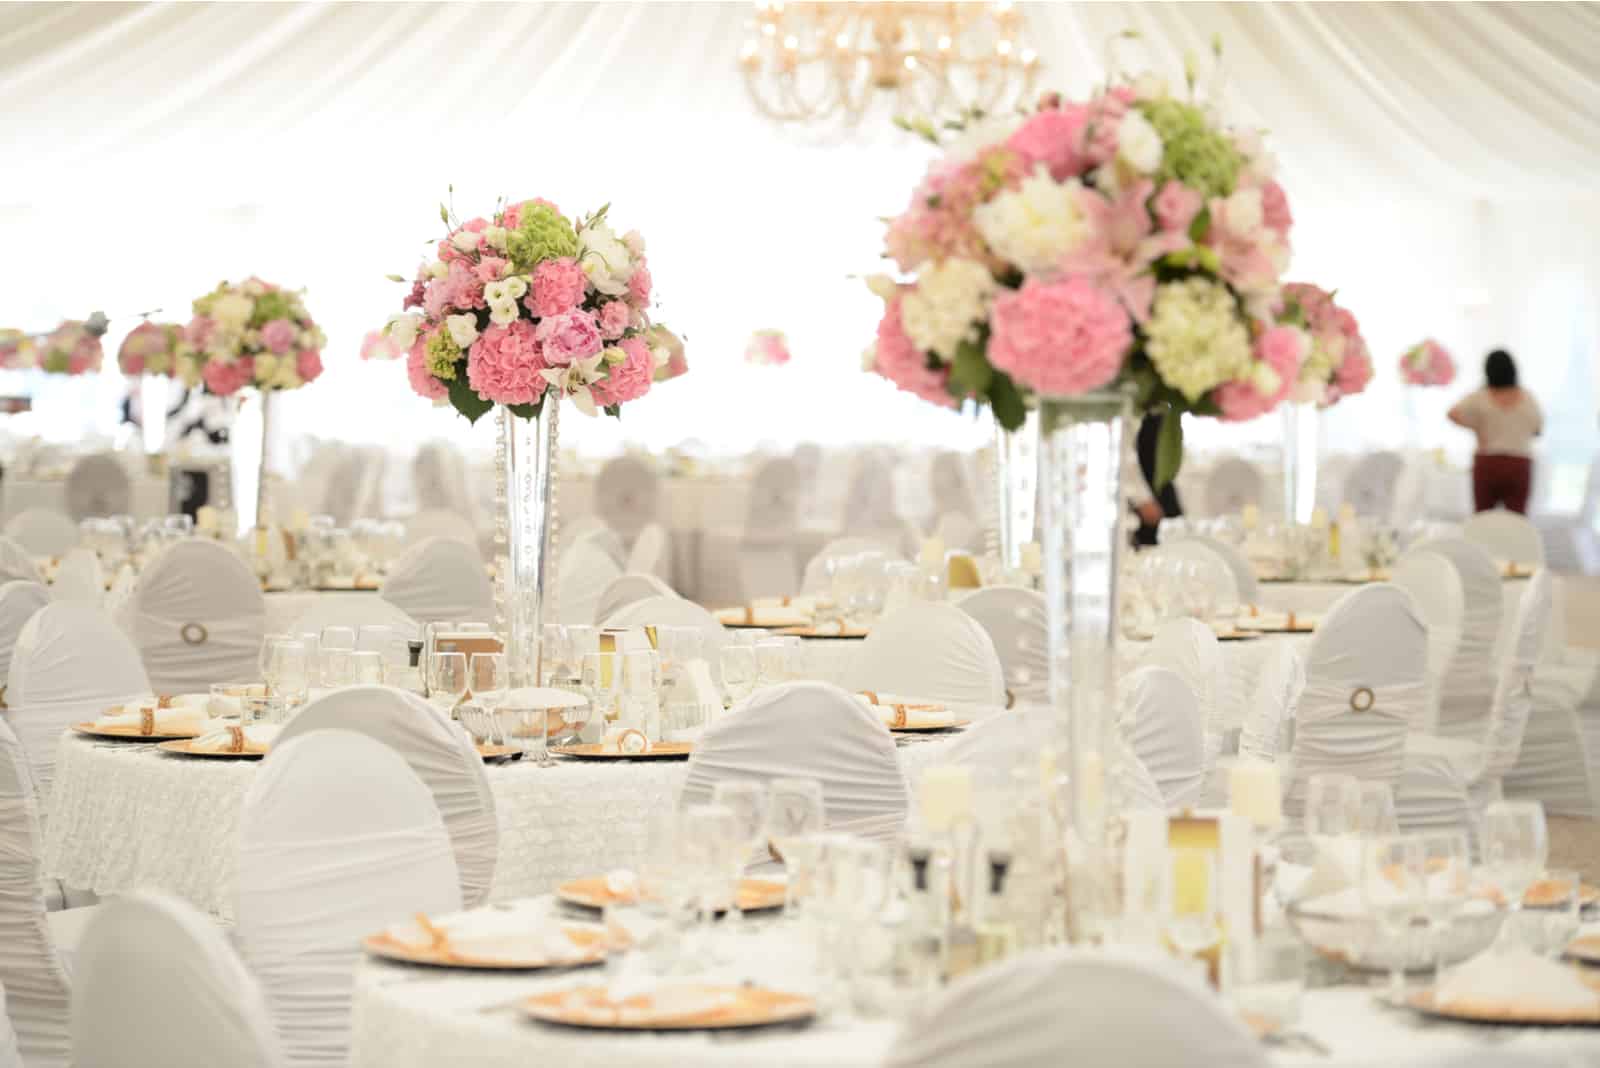 Schöne Blumen auf Tisch am Hochzeitstag